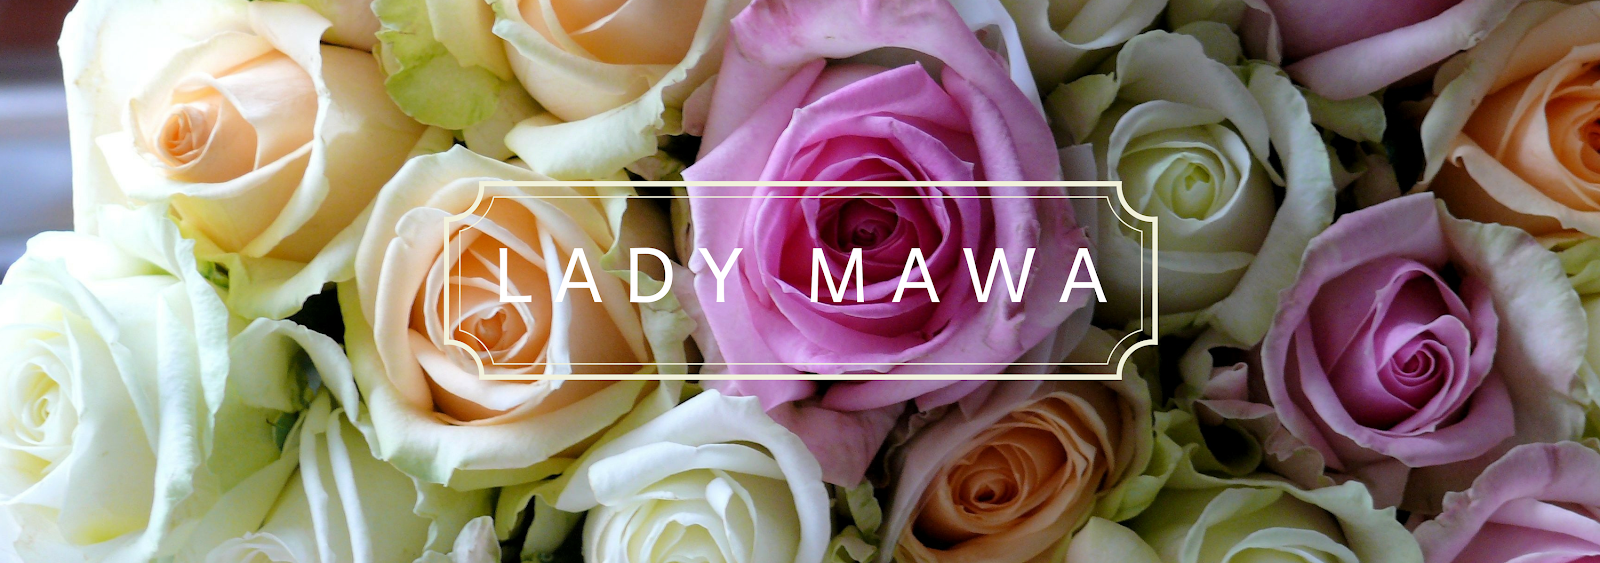 Lady MaWa